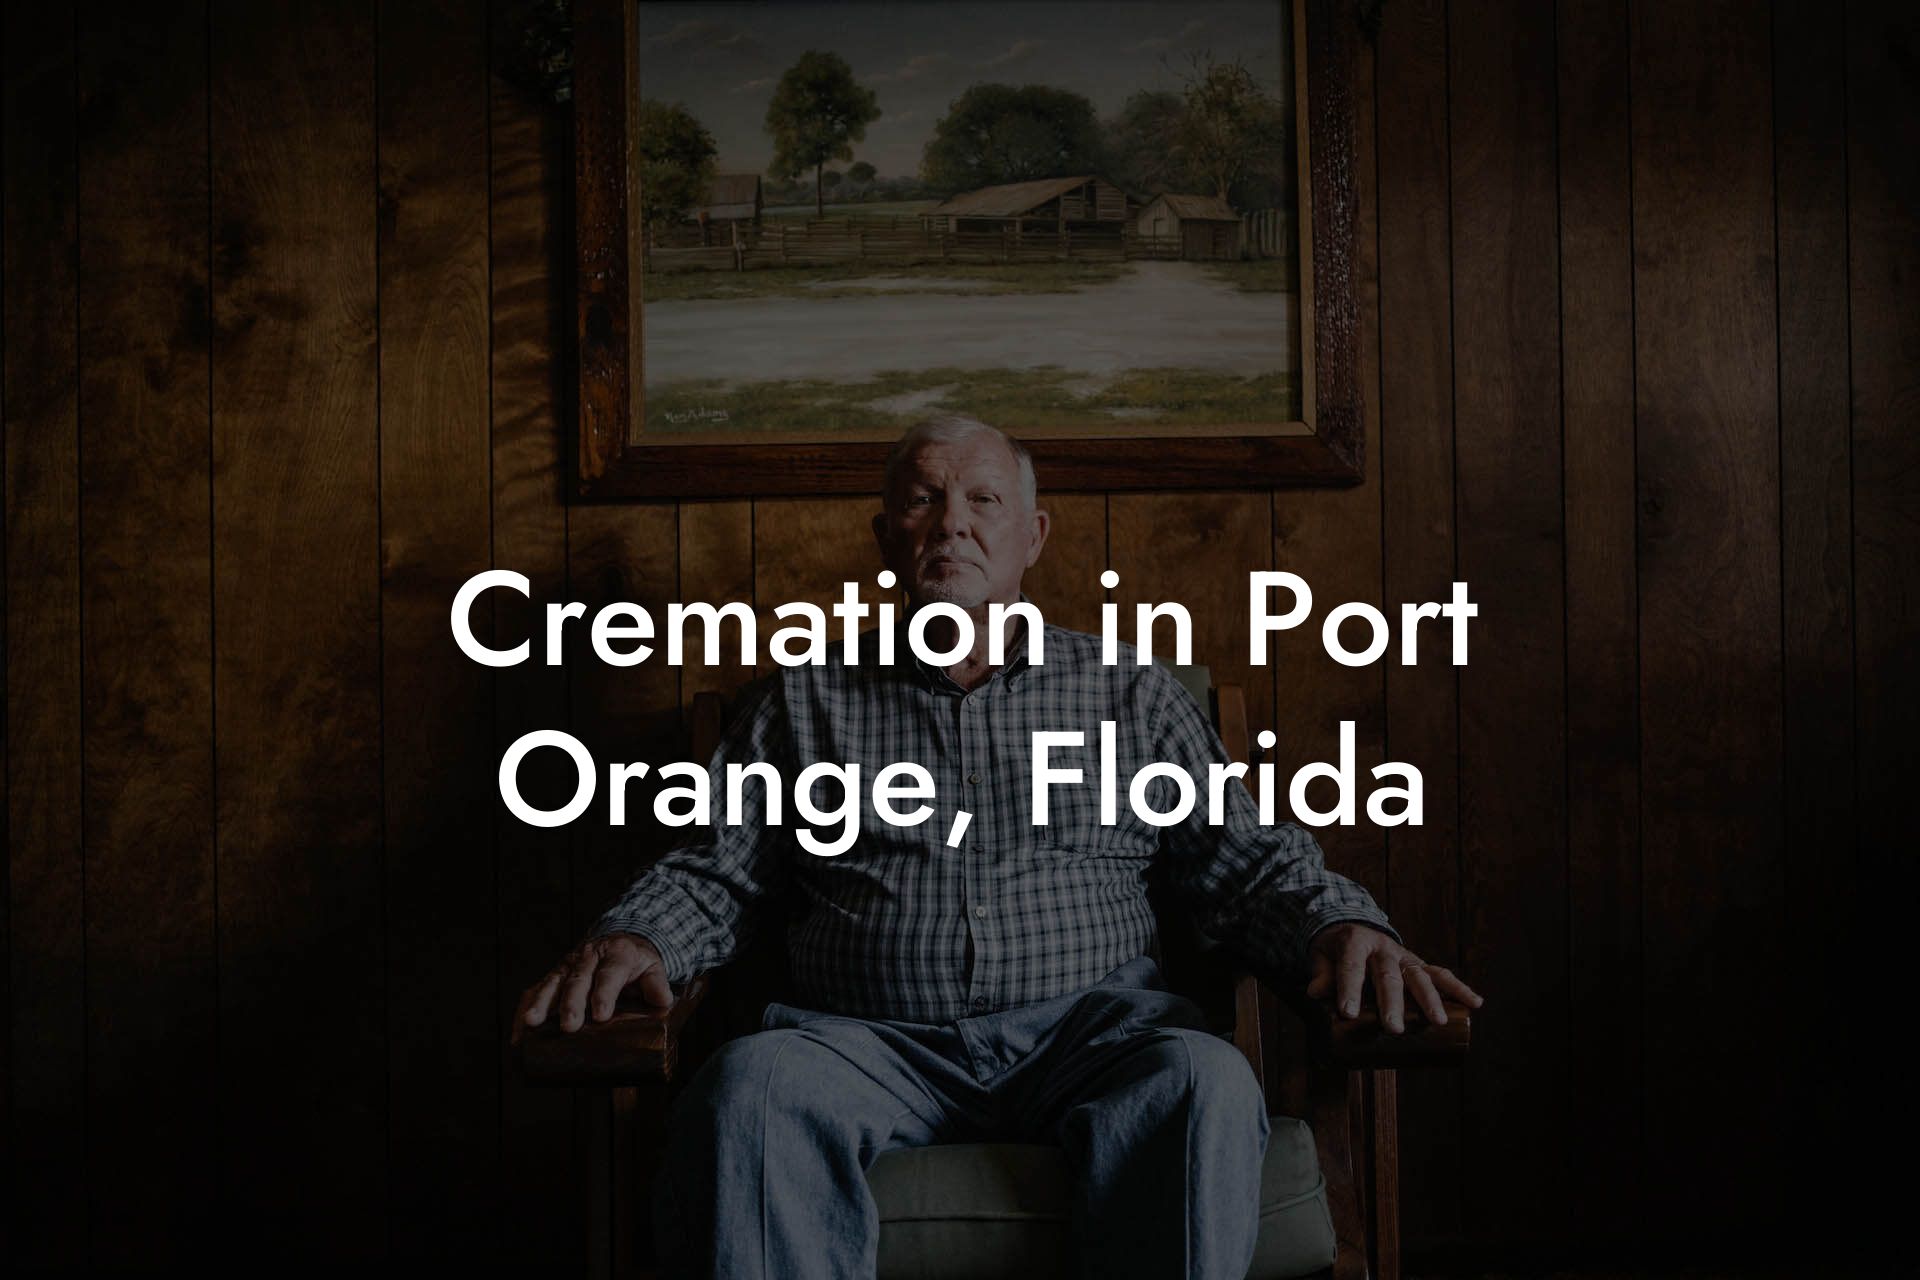 Cremation in Port Orange, Florida